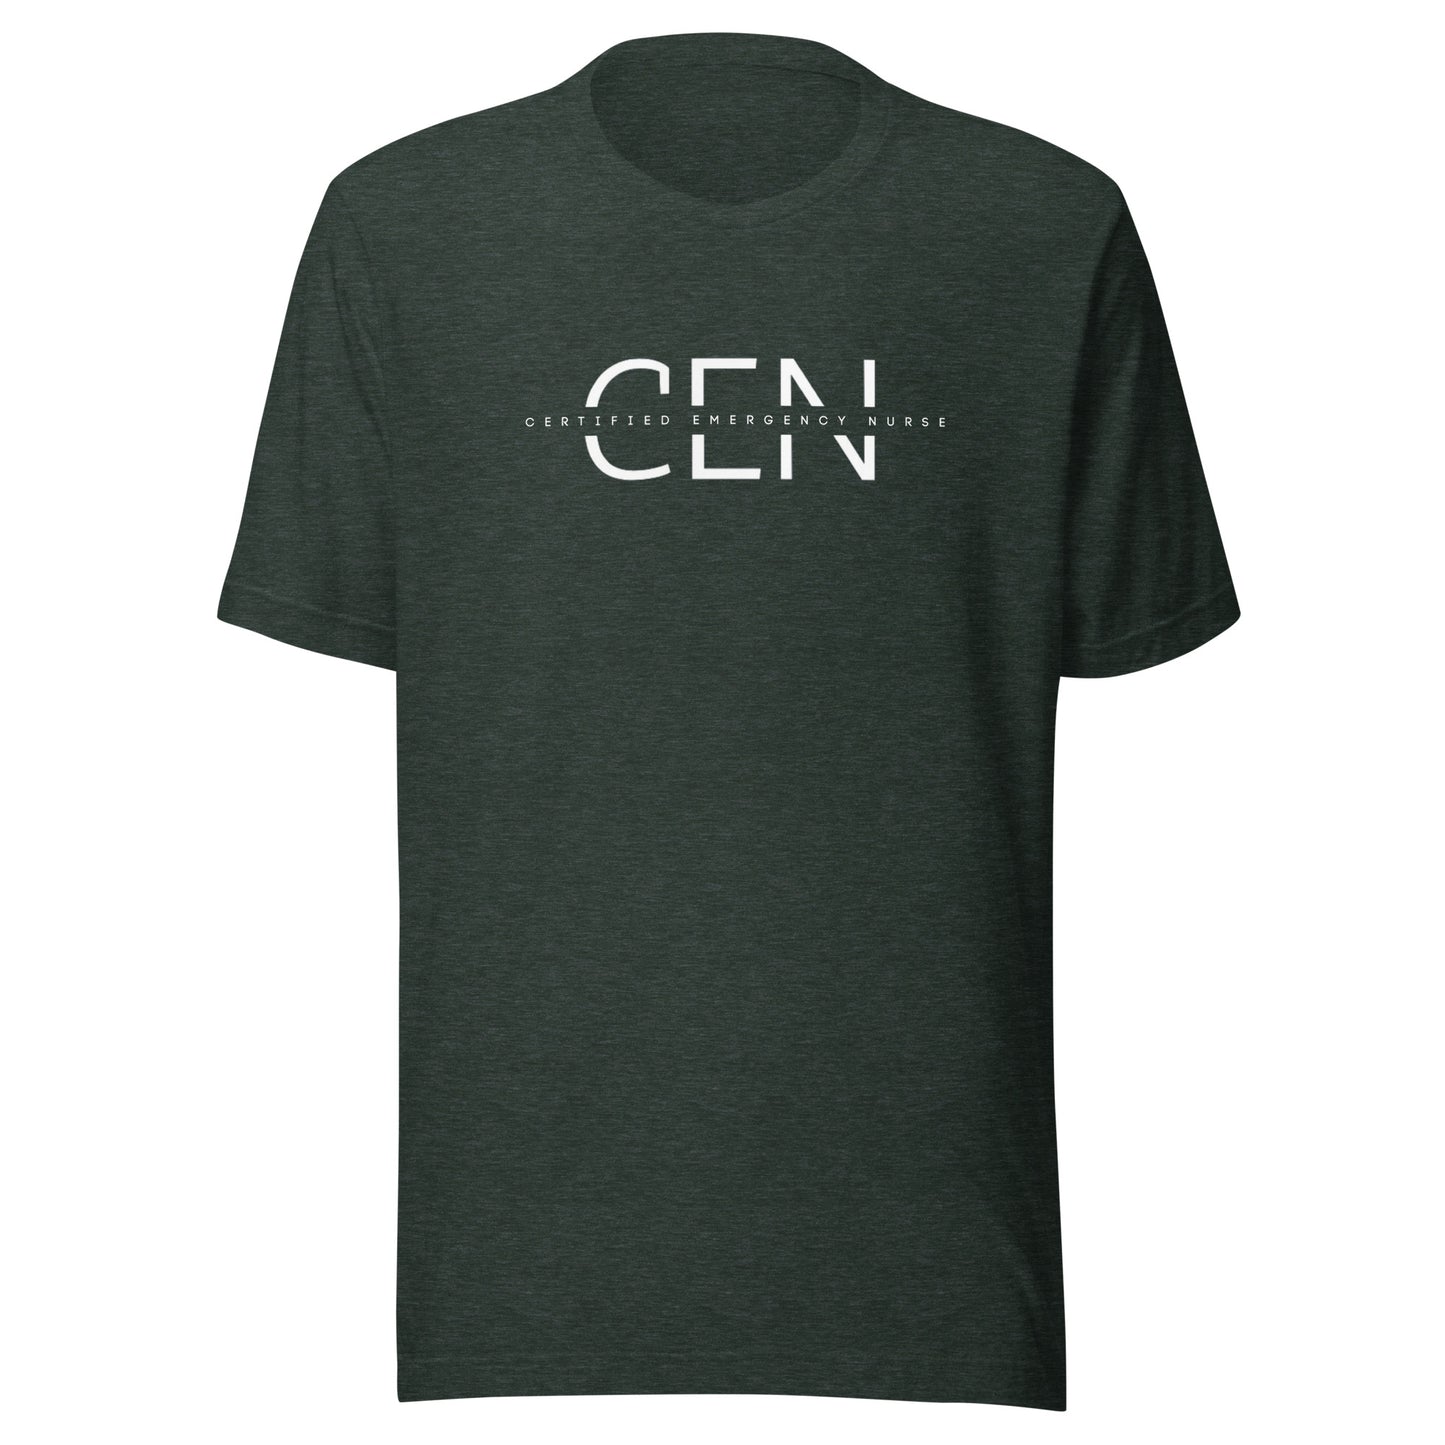 CEN Certified Emergency Nurse t-shirt